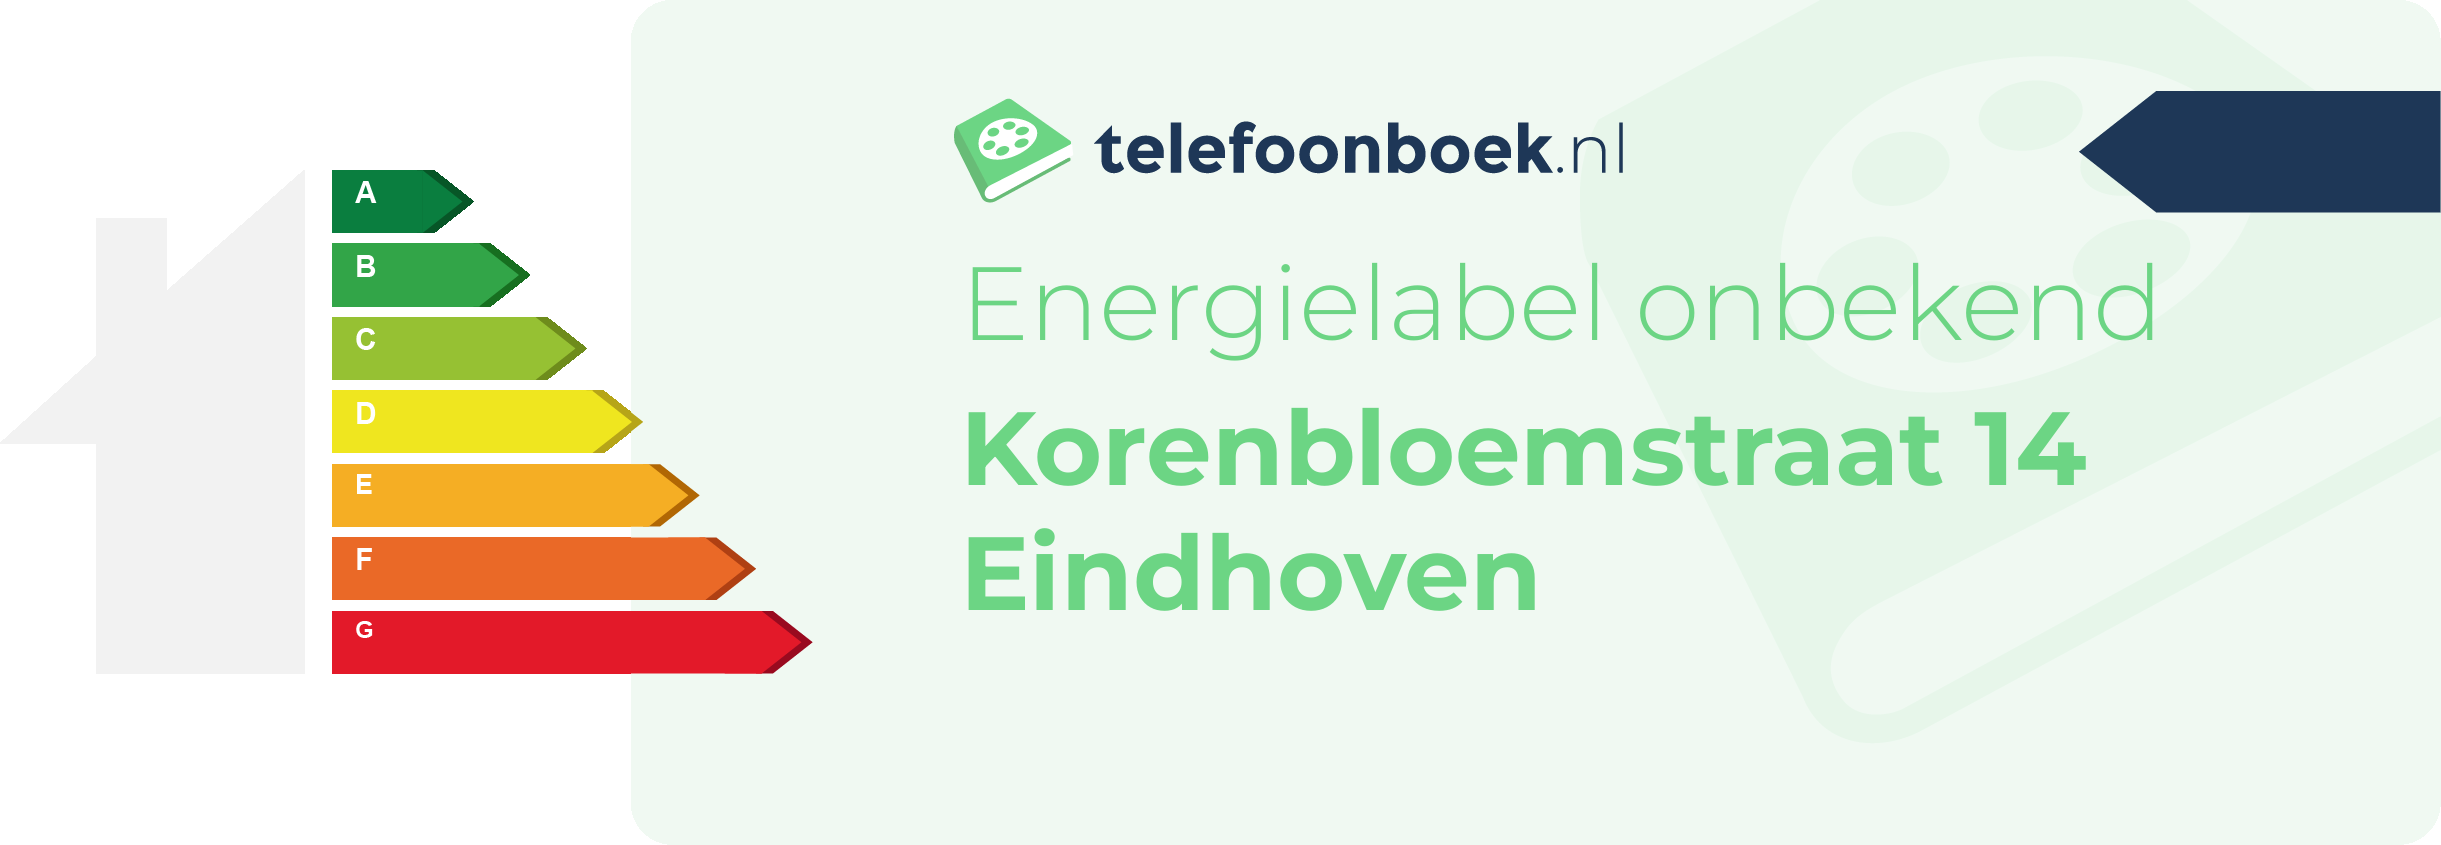 Energielabel Korenbloemstraat 14 Eindhoven